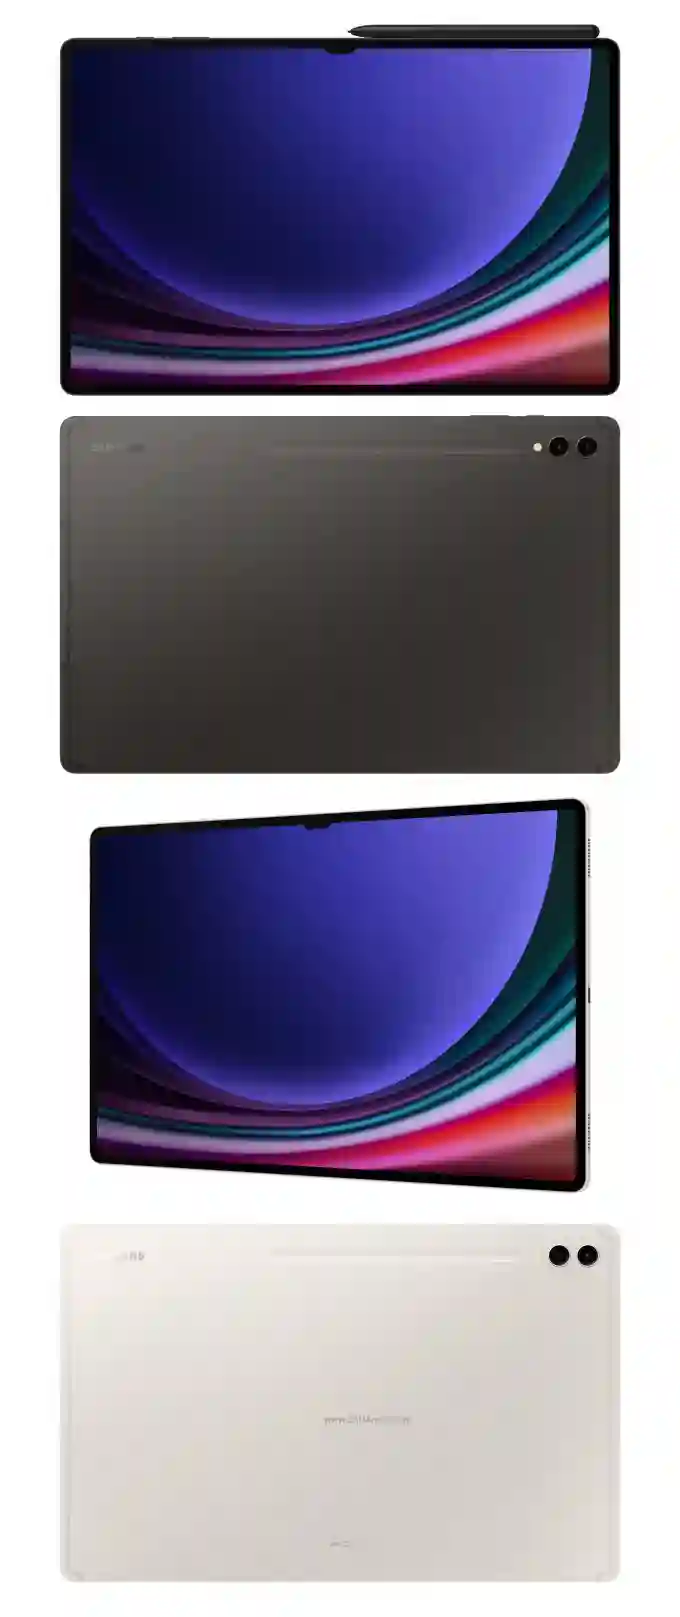 مشخصات تبلت گلکسی تب S9 اولترا Galaxy Tab S9 Ultra